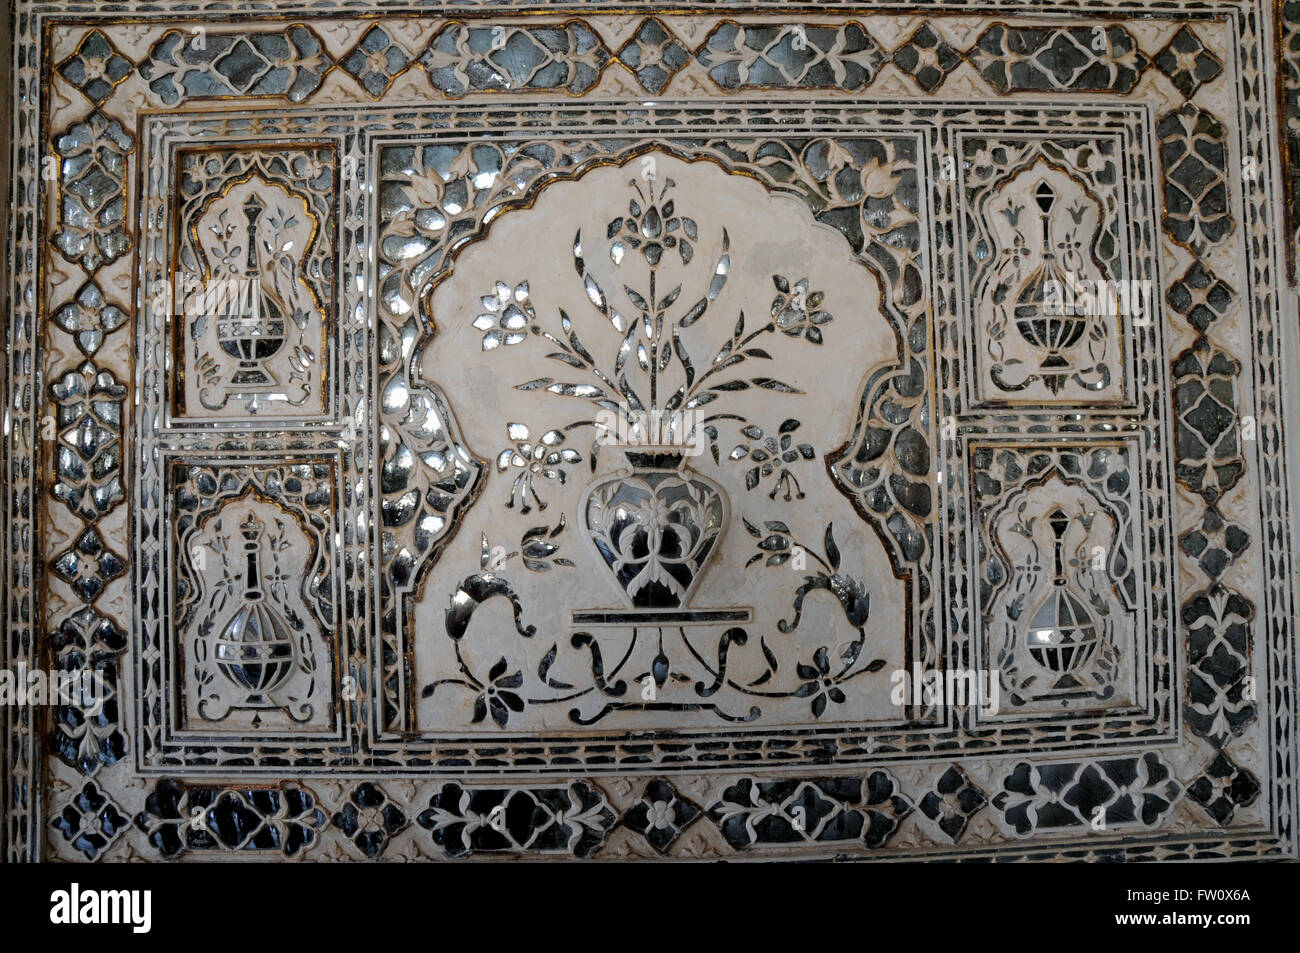 Detail aus einem Panel in das Sheesh Mahal in Amber Fort, Jaipur. Sheesh Mahal ist mit Tausenden von Spiegel Fliesen dekoriert. Stockfoto